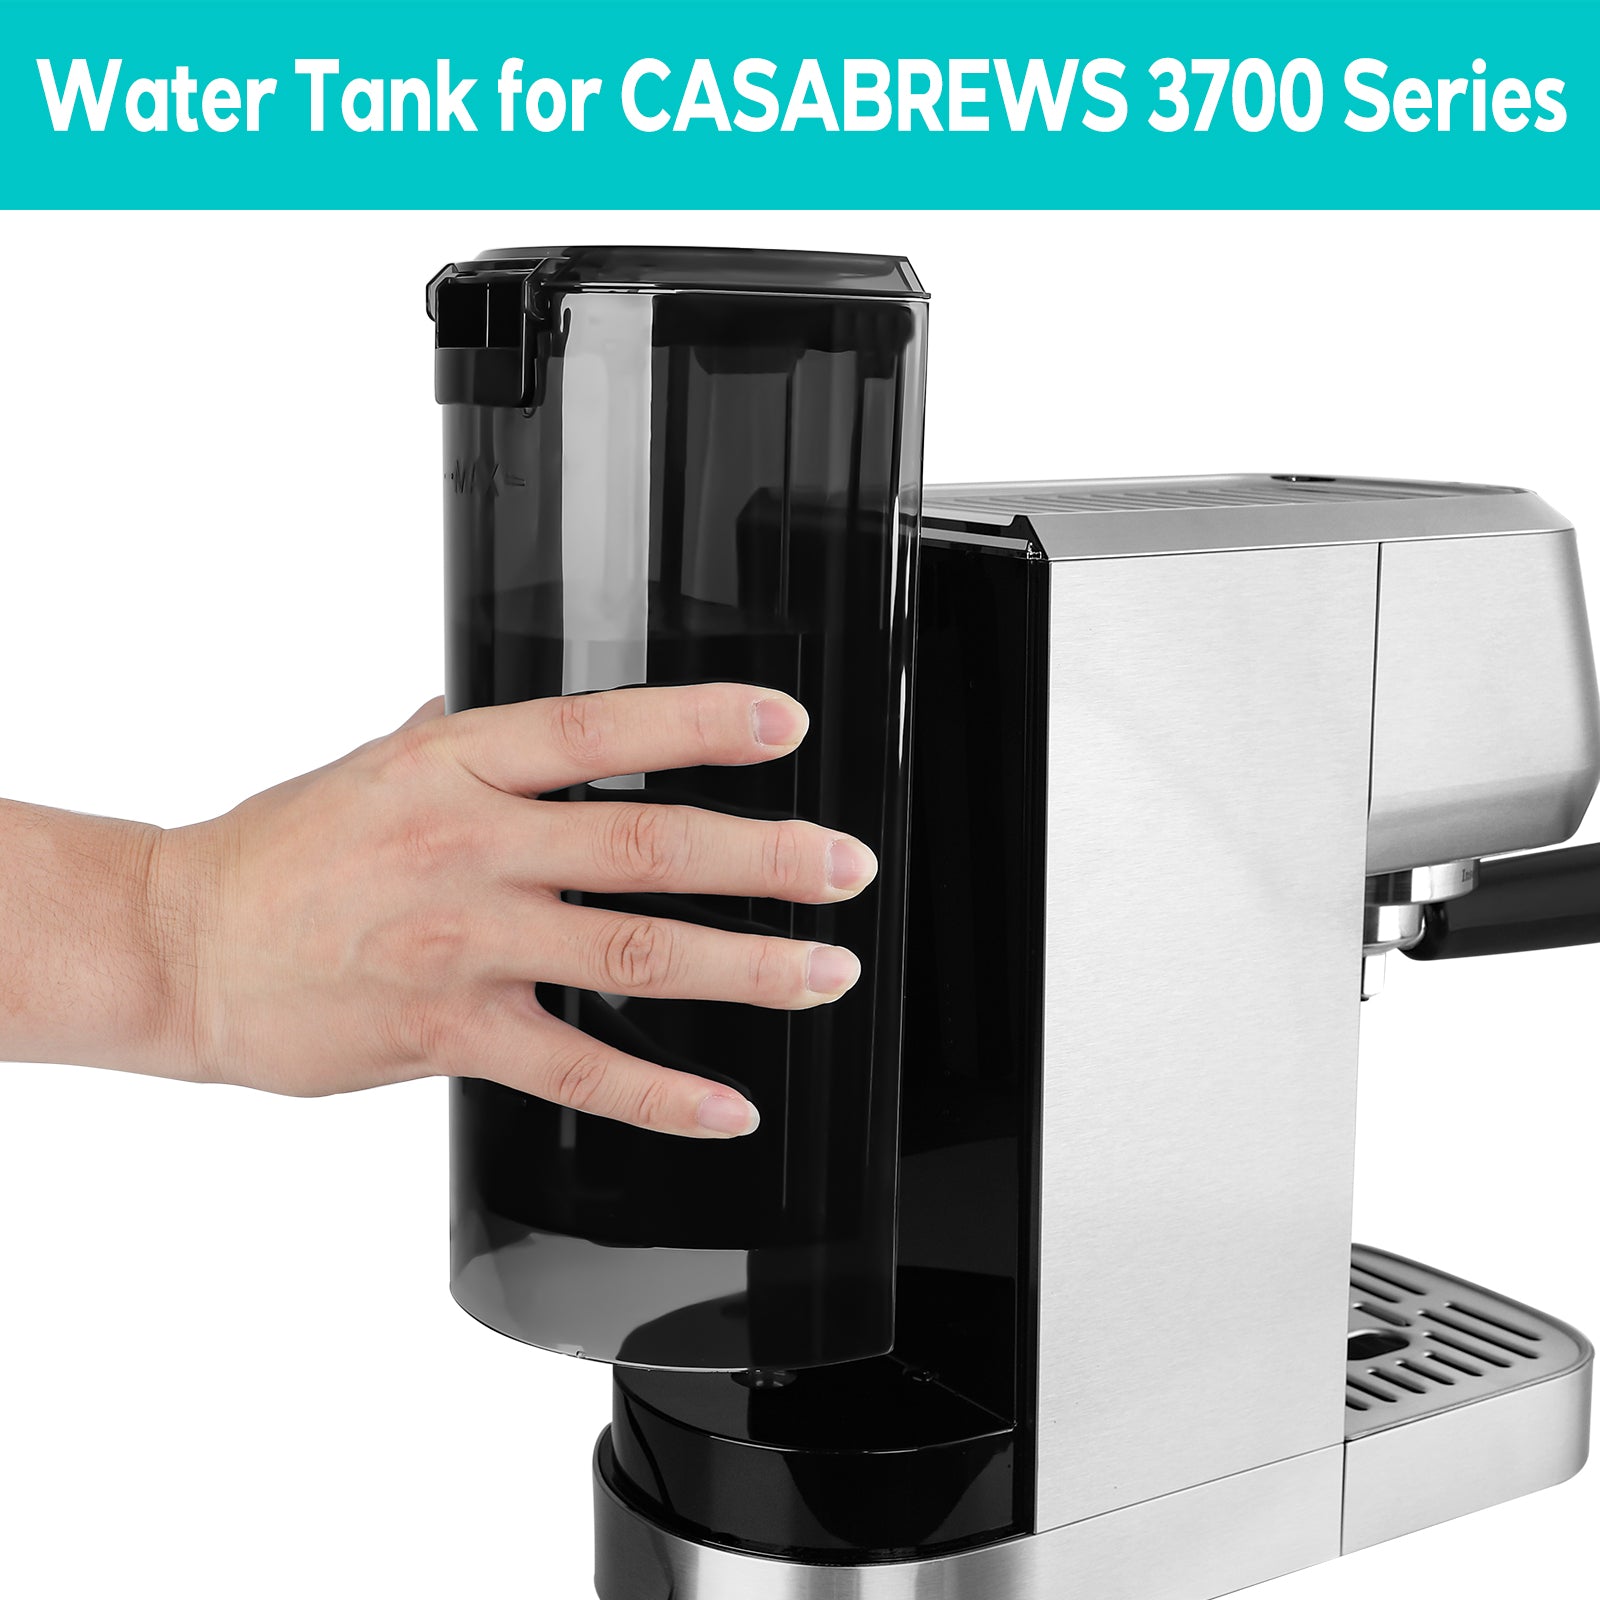 Casabrews Espresso Machine Series 3700 Water Tank